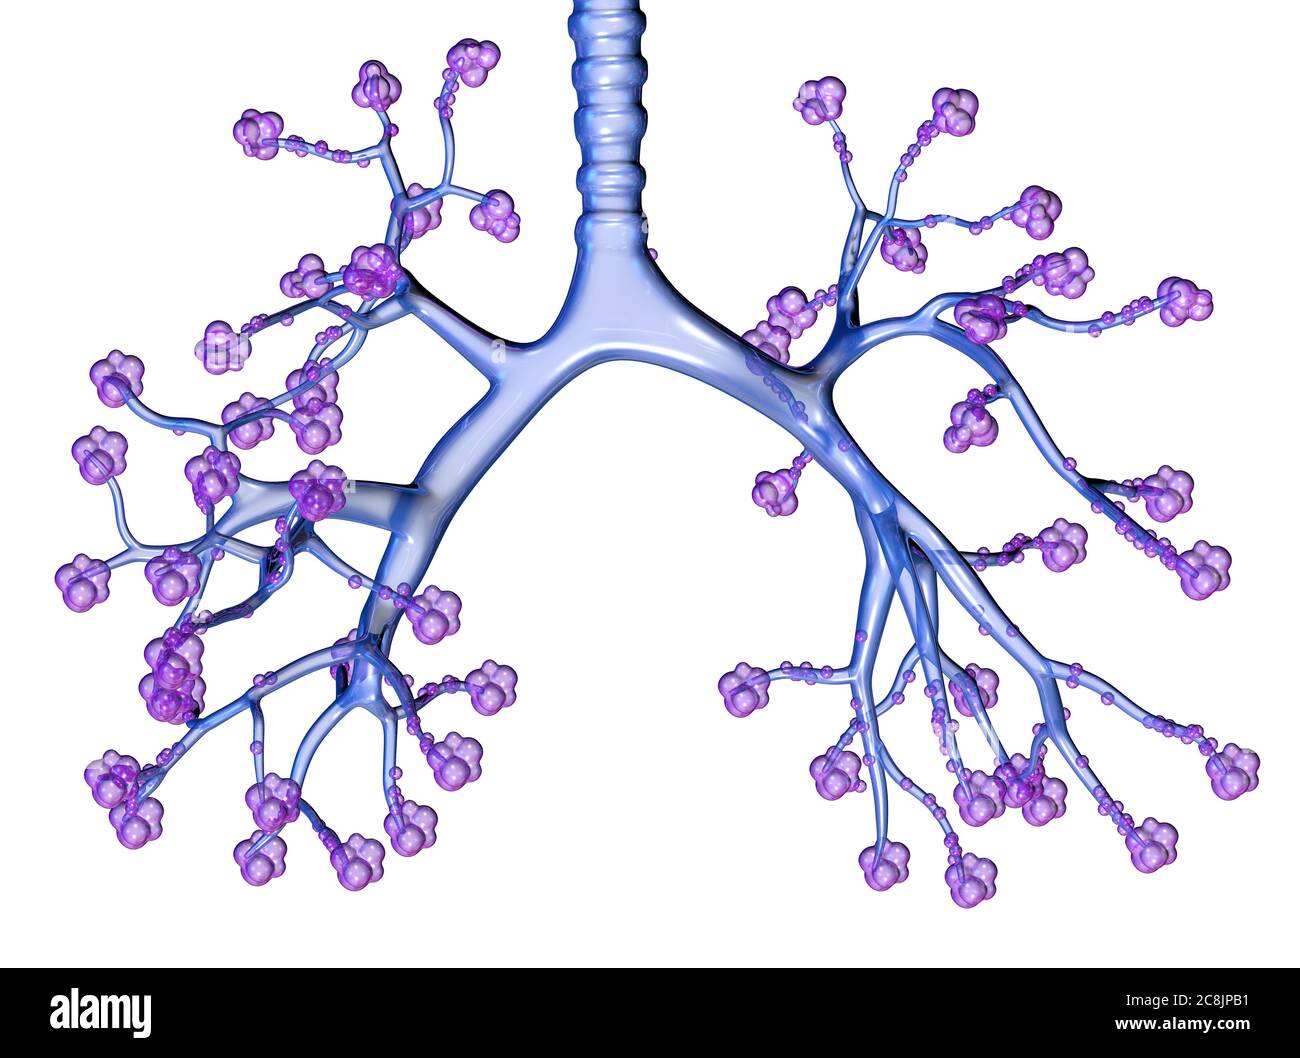 Illustrazione che mostra trachea, bronchioli e alveoli polmonari trasparenti Foto Stock